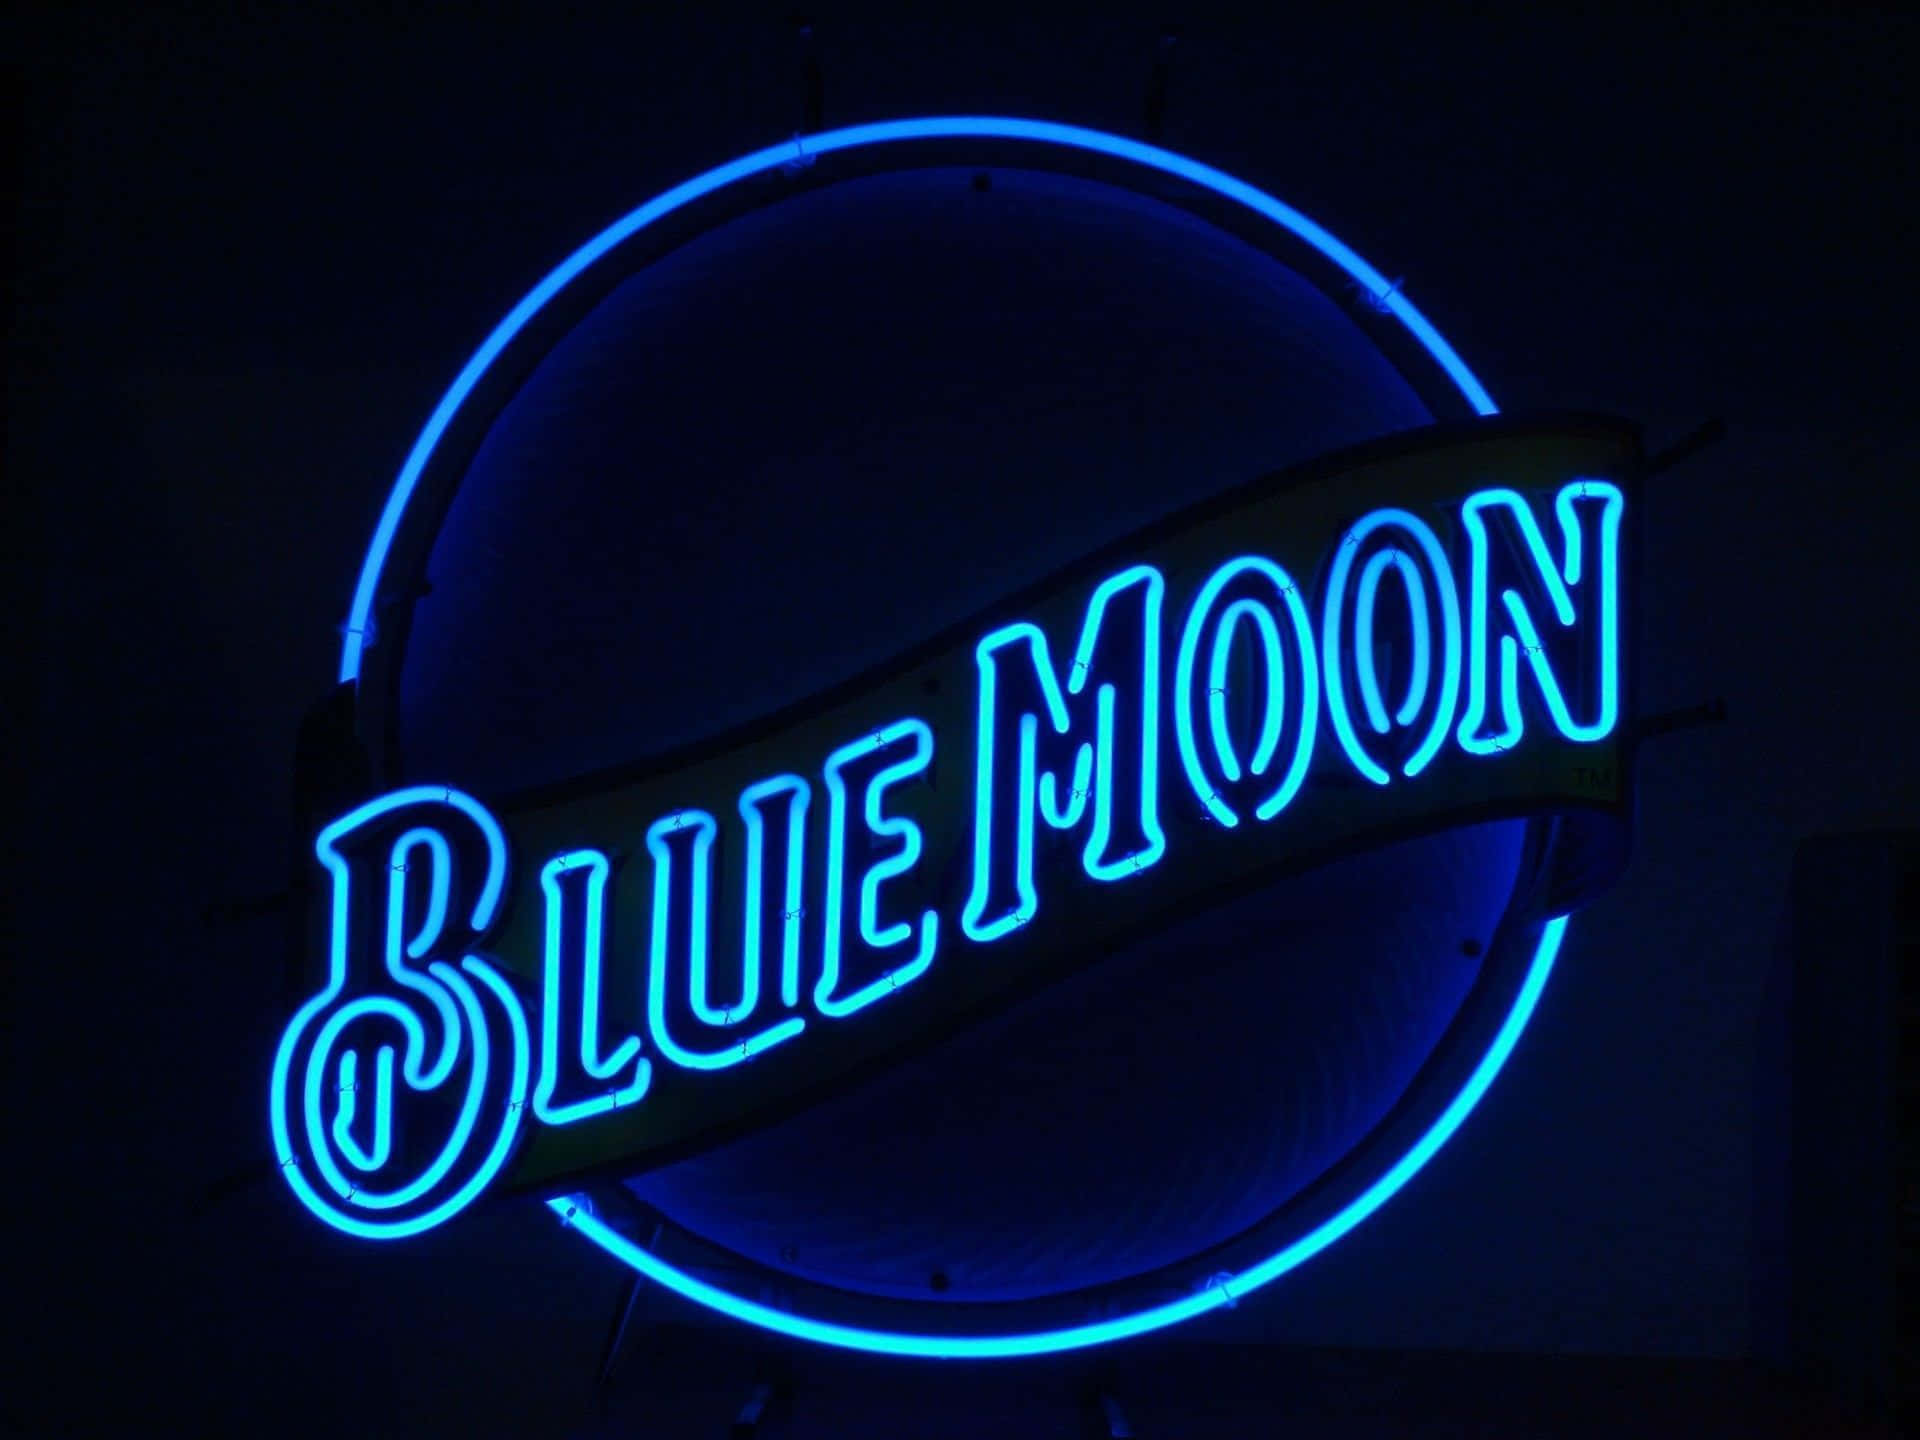 Immaginedi Una Luna Blu Con Scritte In Neon Led.